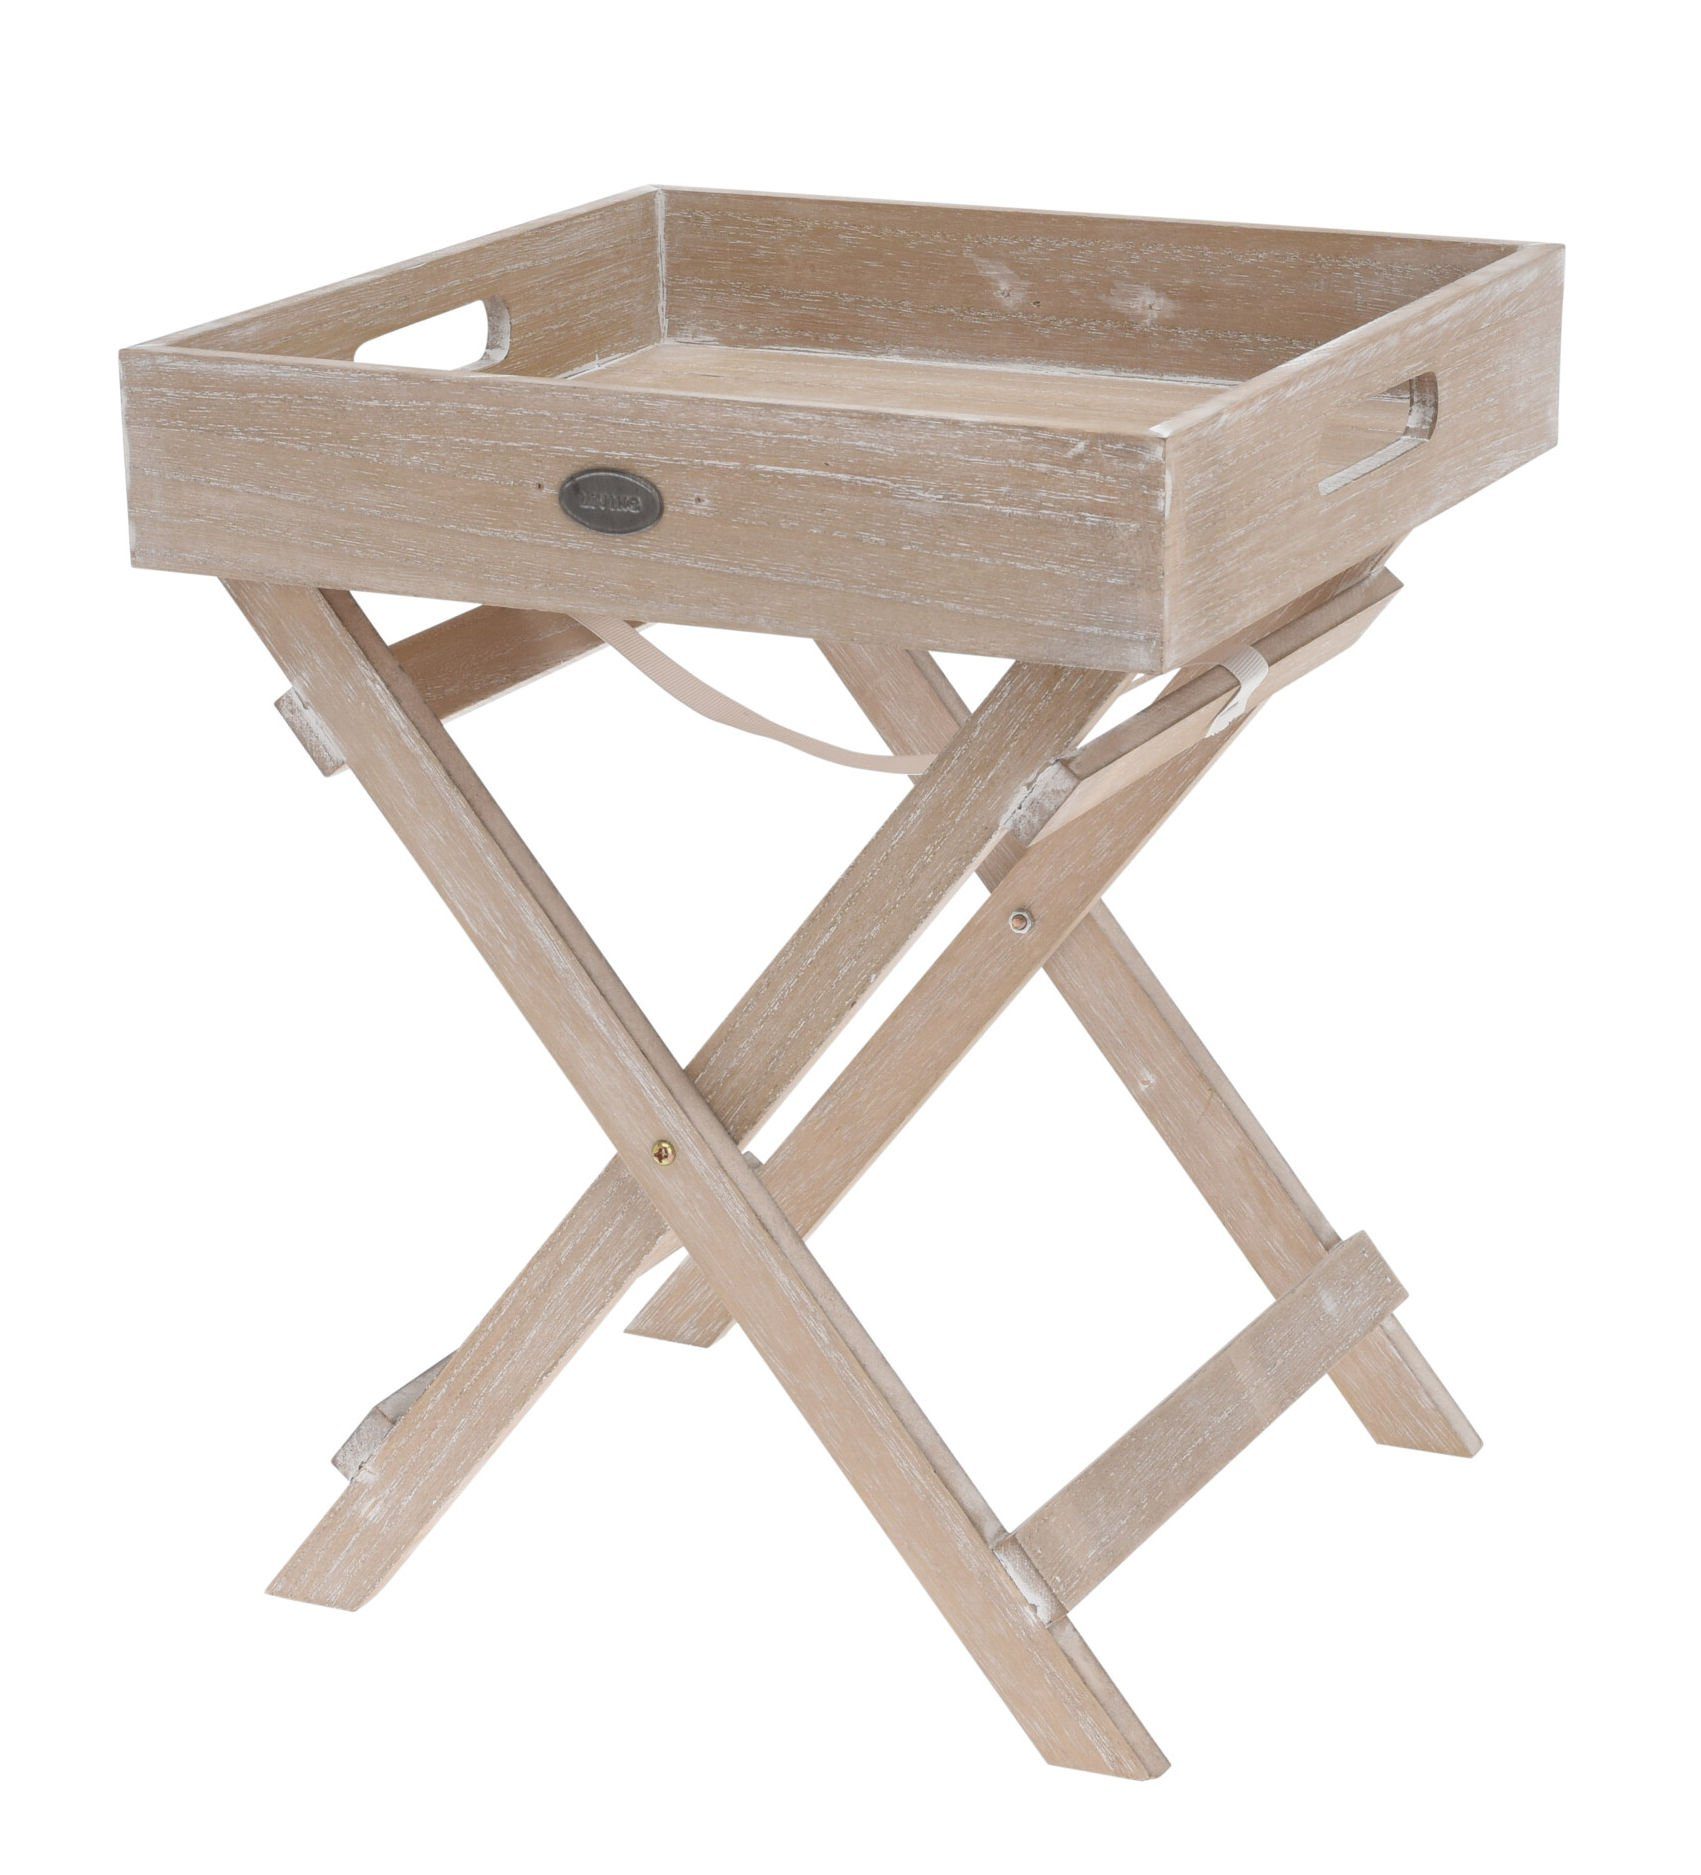 Beistelltisch - Tisch klappbarer Tablett abnehmbaren mit Holz Deko natur, Beistelltisch Spetebo 2-teilig